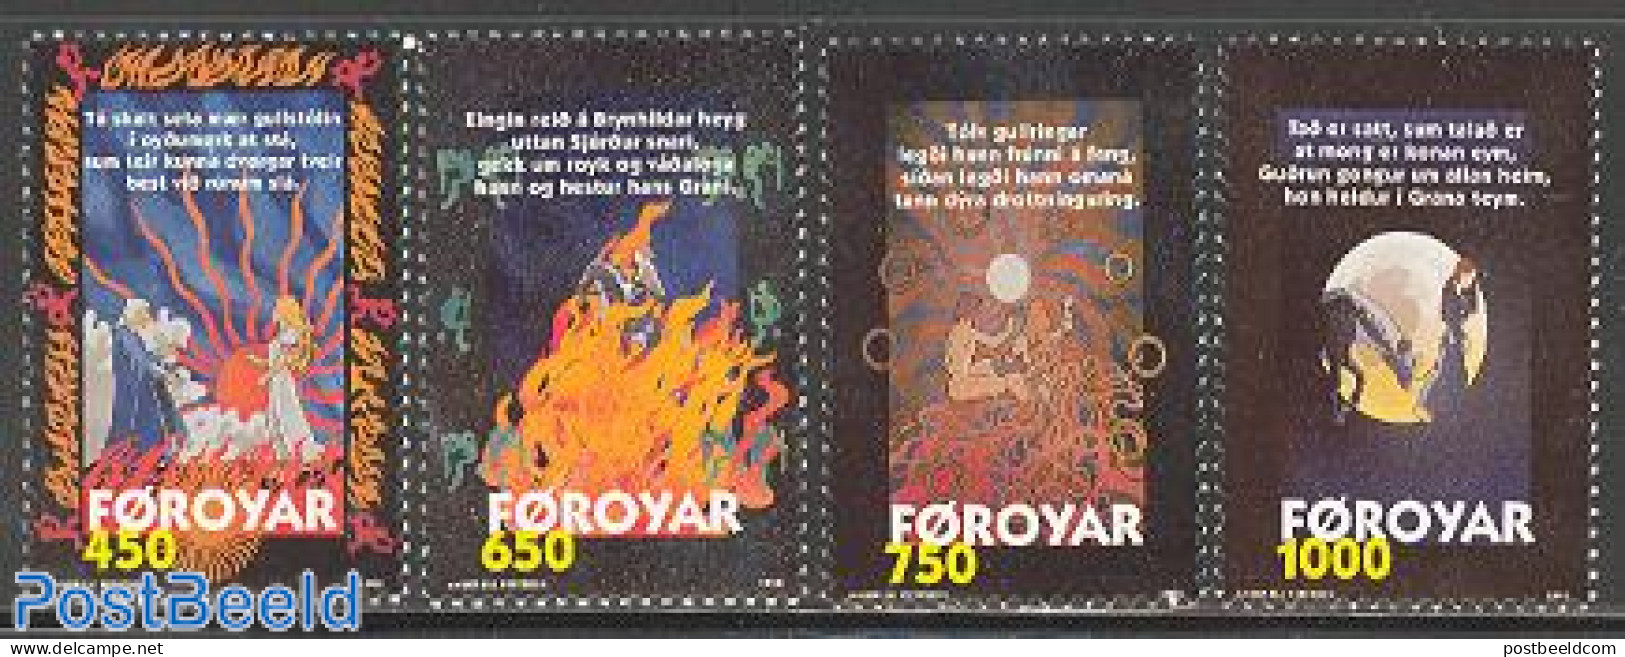 Faroe Islands 1998 Nordic Legends 4v, Mint NH, Art - Fairytales - Märchen, Sagen & Legenden